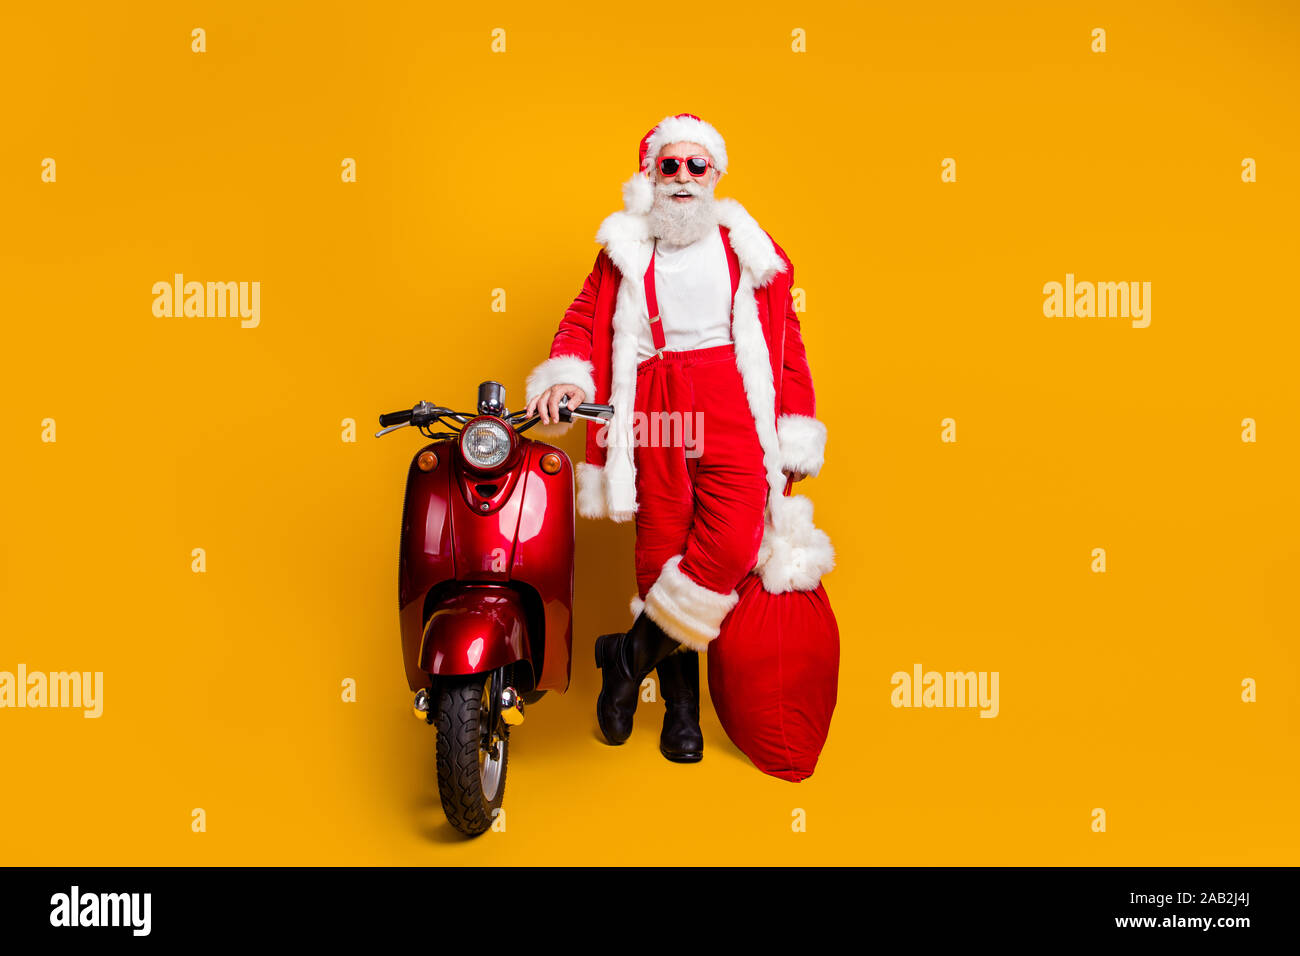 Weihnachten Geschenk liefern. Volle Größe Foto lustig grauen Bart  Weihnachtsmann Treiber in Red Hat halten Big x-mas Sack stand Motorrad  tragen Shirt Stockfotografie - Alamy